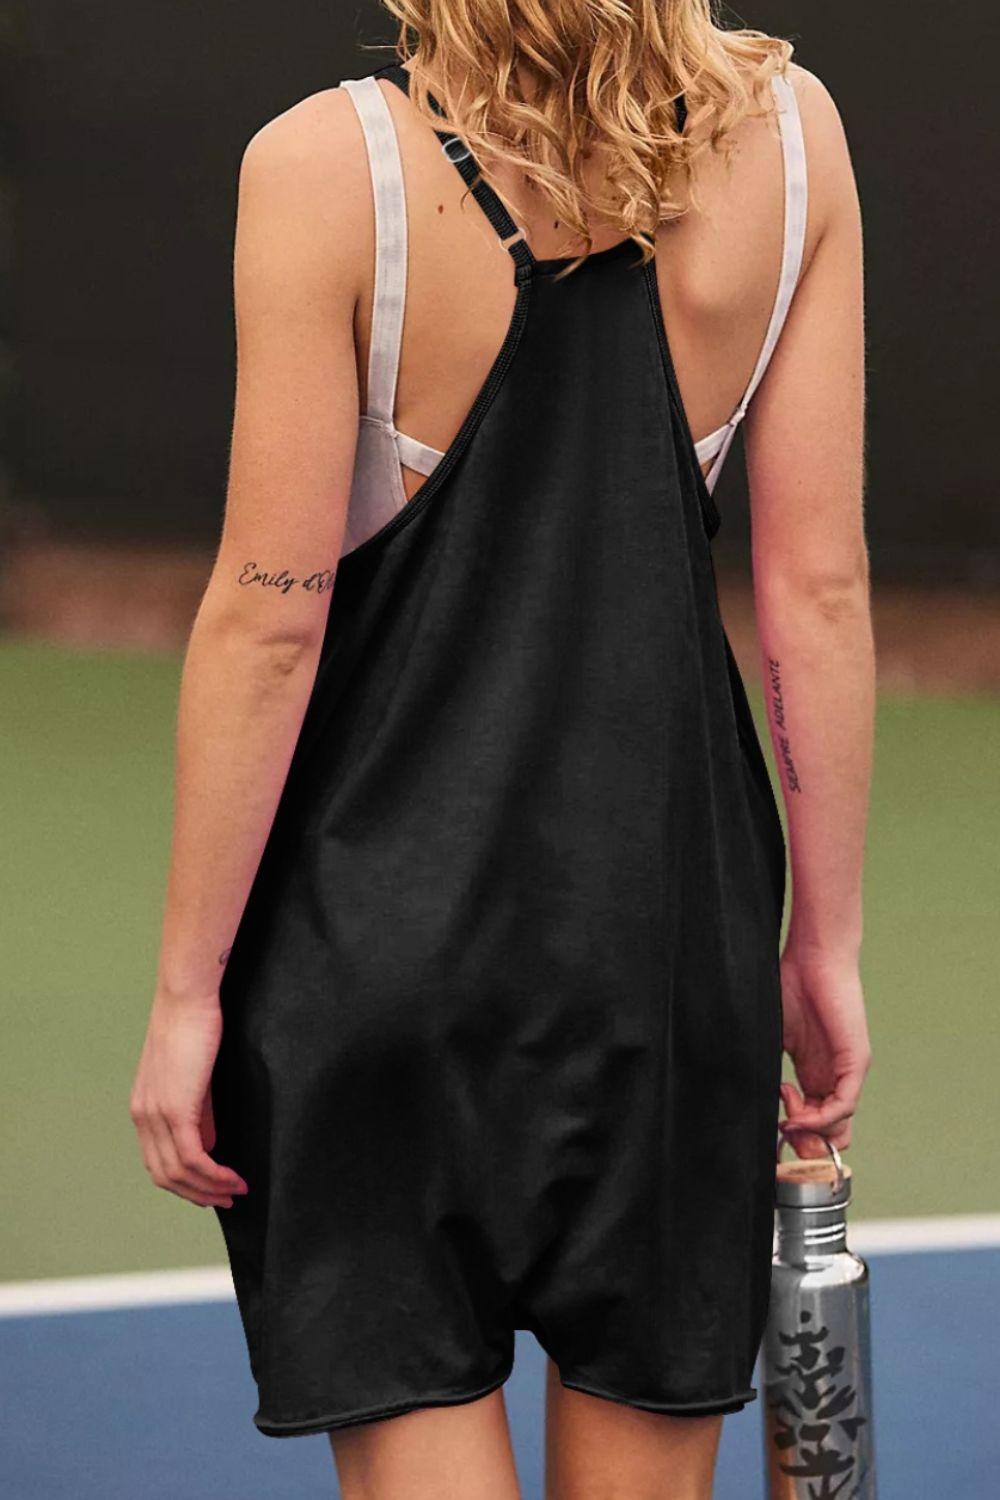 a woman in a black dress holding a tennis racquet